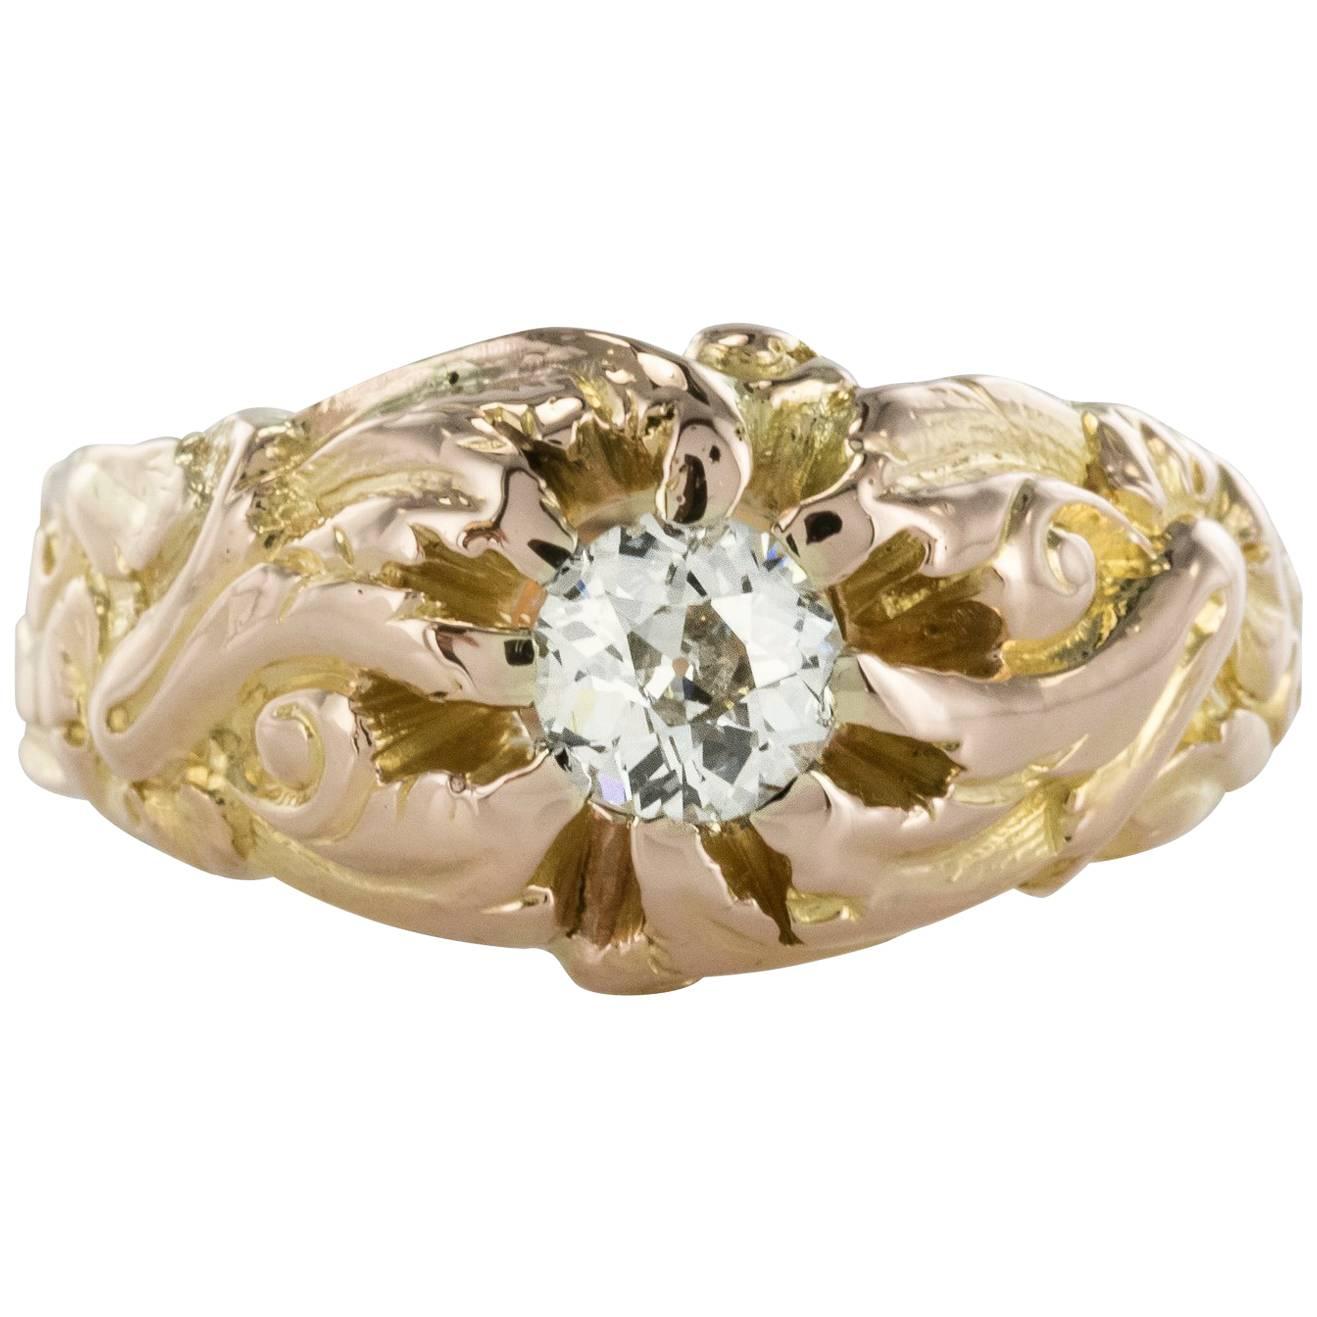 French 19th Century Napoleon 3 18 Karat Rose Gold 0.60 Carat Diamond Man Ring